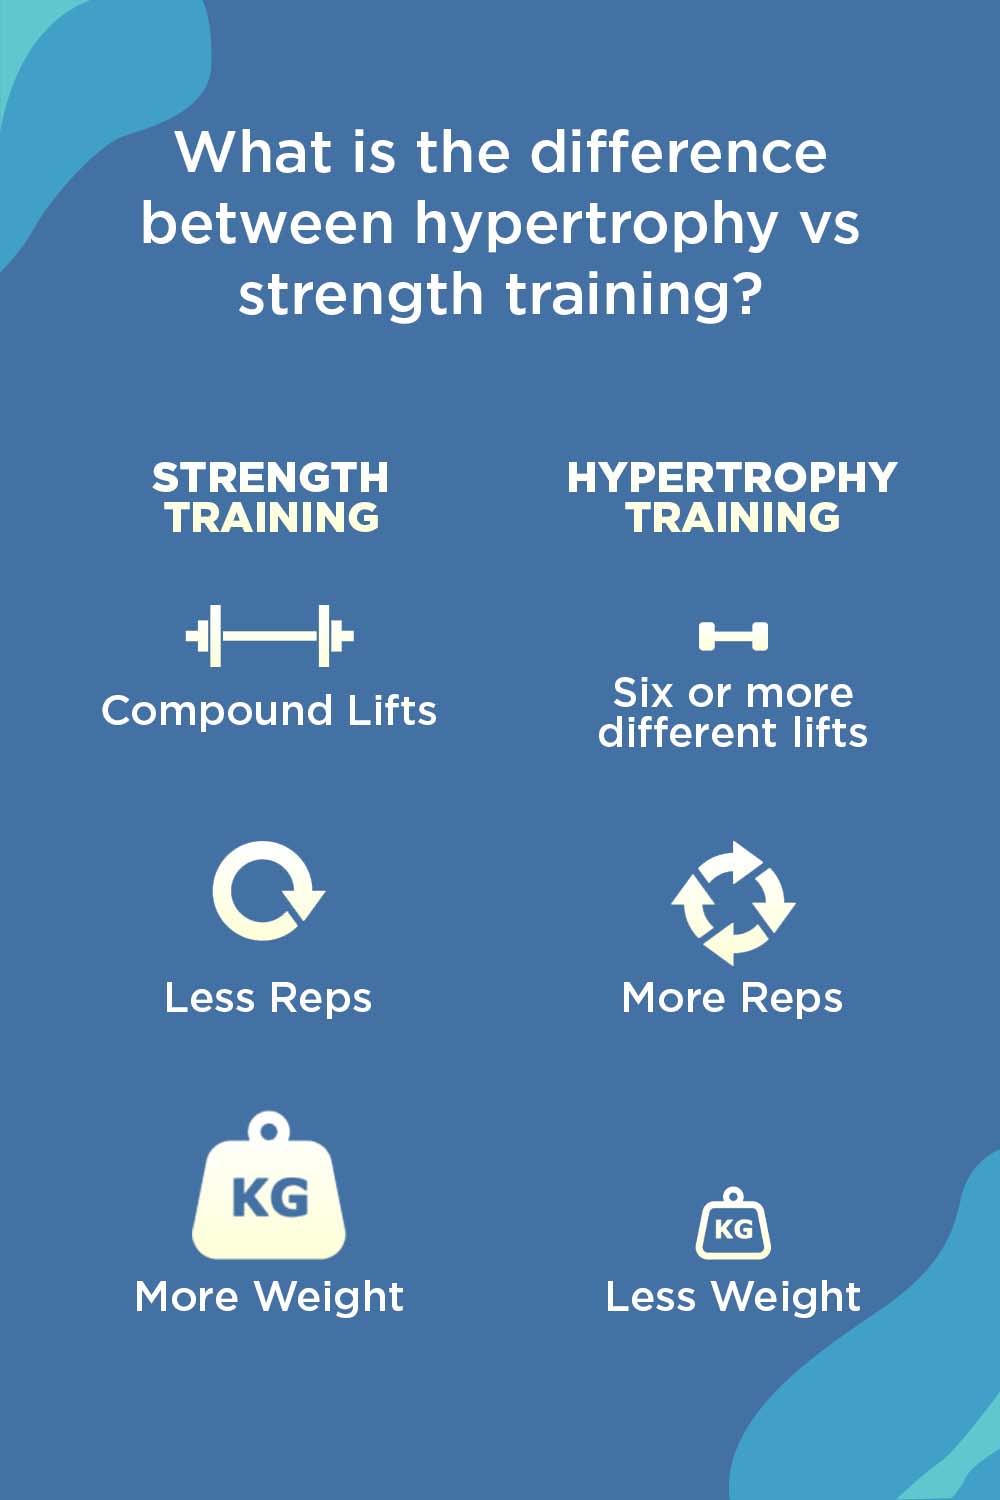 hypertrophy vs strength